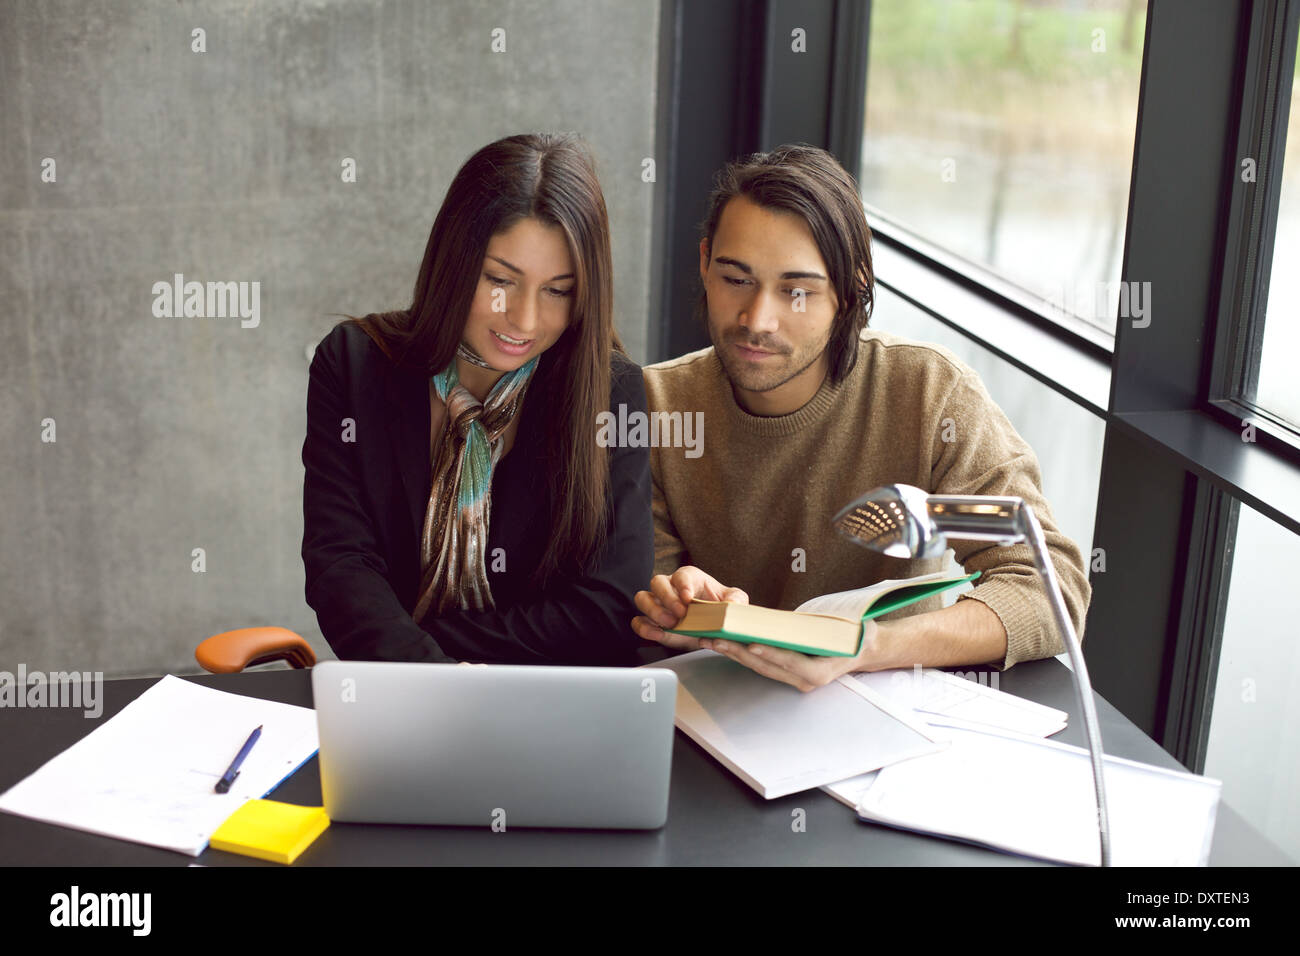 Giovane uomo e donna con laptop e libro in preparazione per gli esami. studenti universitari che lavorano duramente per gli esami finali in biblioteca. Foto Stock